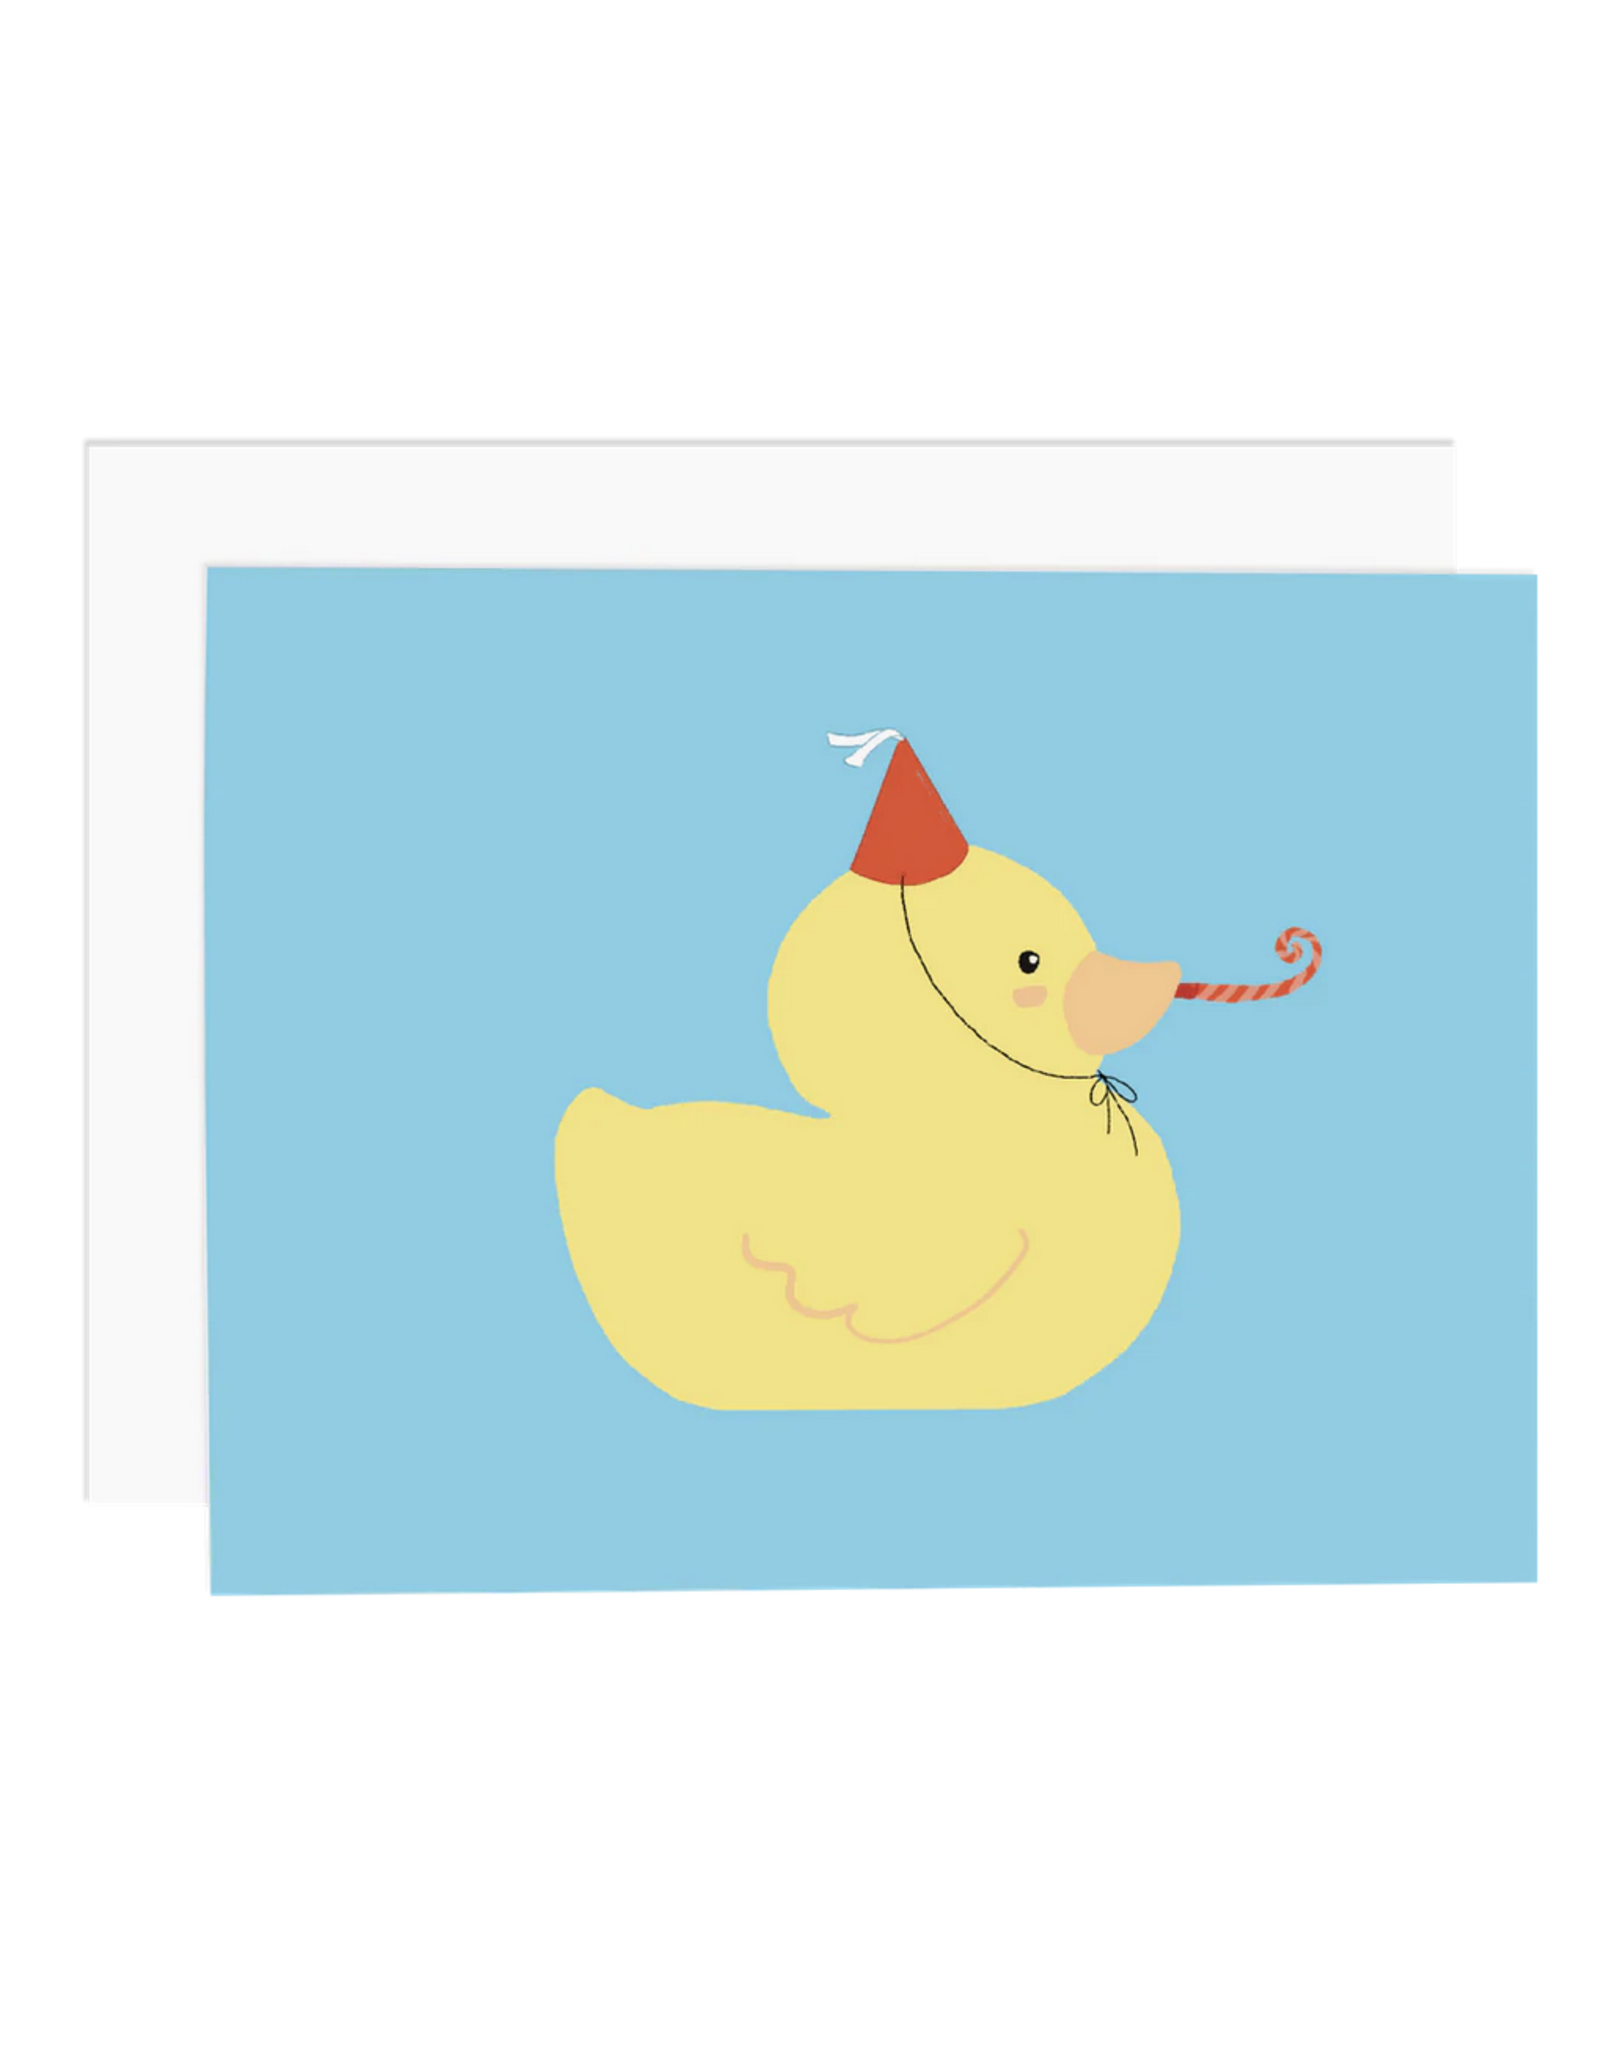 Ramus & Co Rubber Ducky Party Card